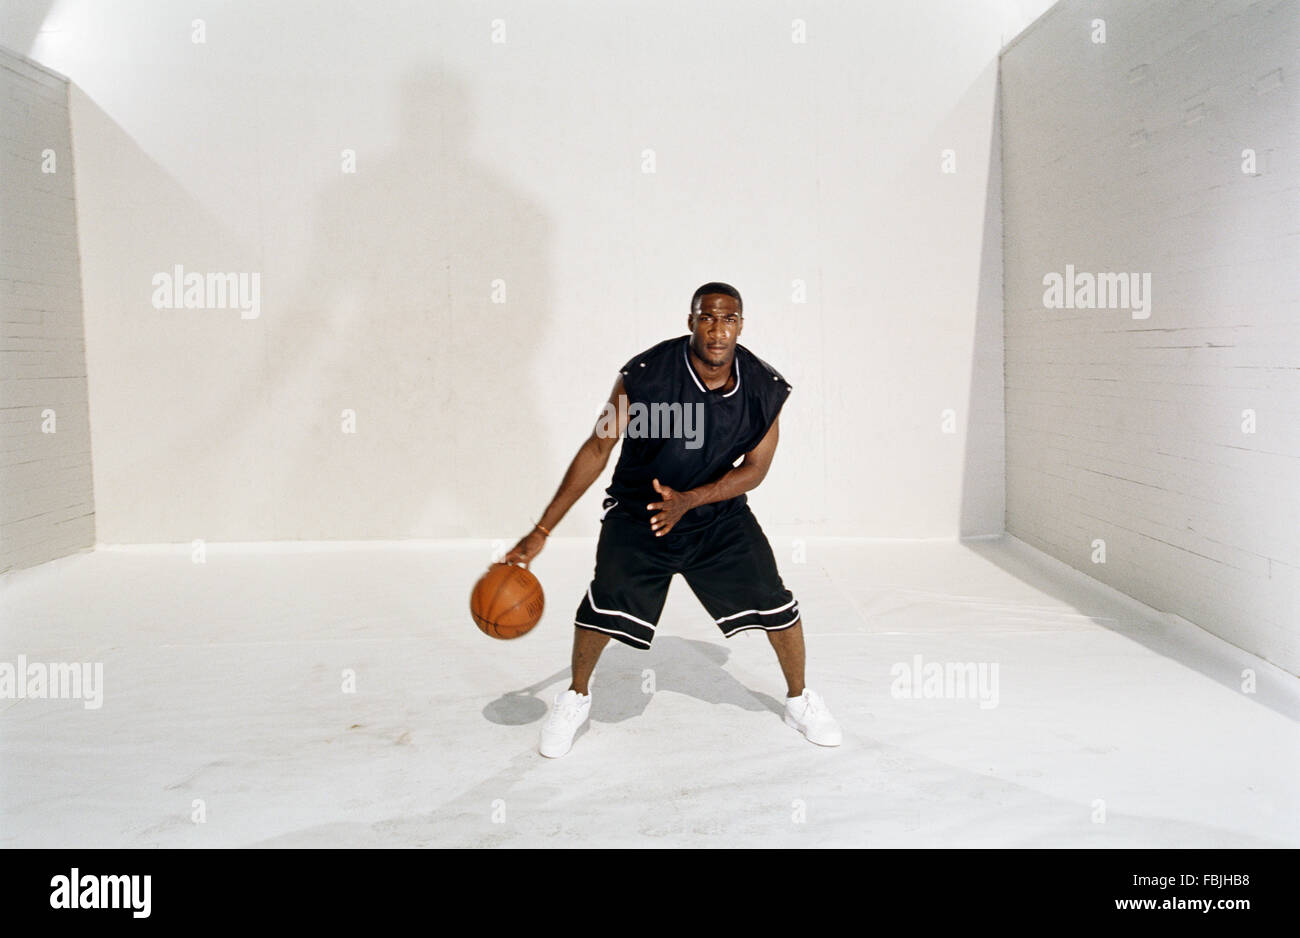 LOS ANGELES, CA - 12 giugno: giocatore di pallacanestro di NBA Gilbert Arenas a Los Angeles, la California il 12 giugno 2003. Foto Stock